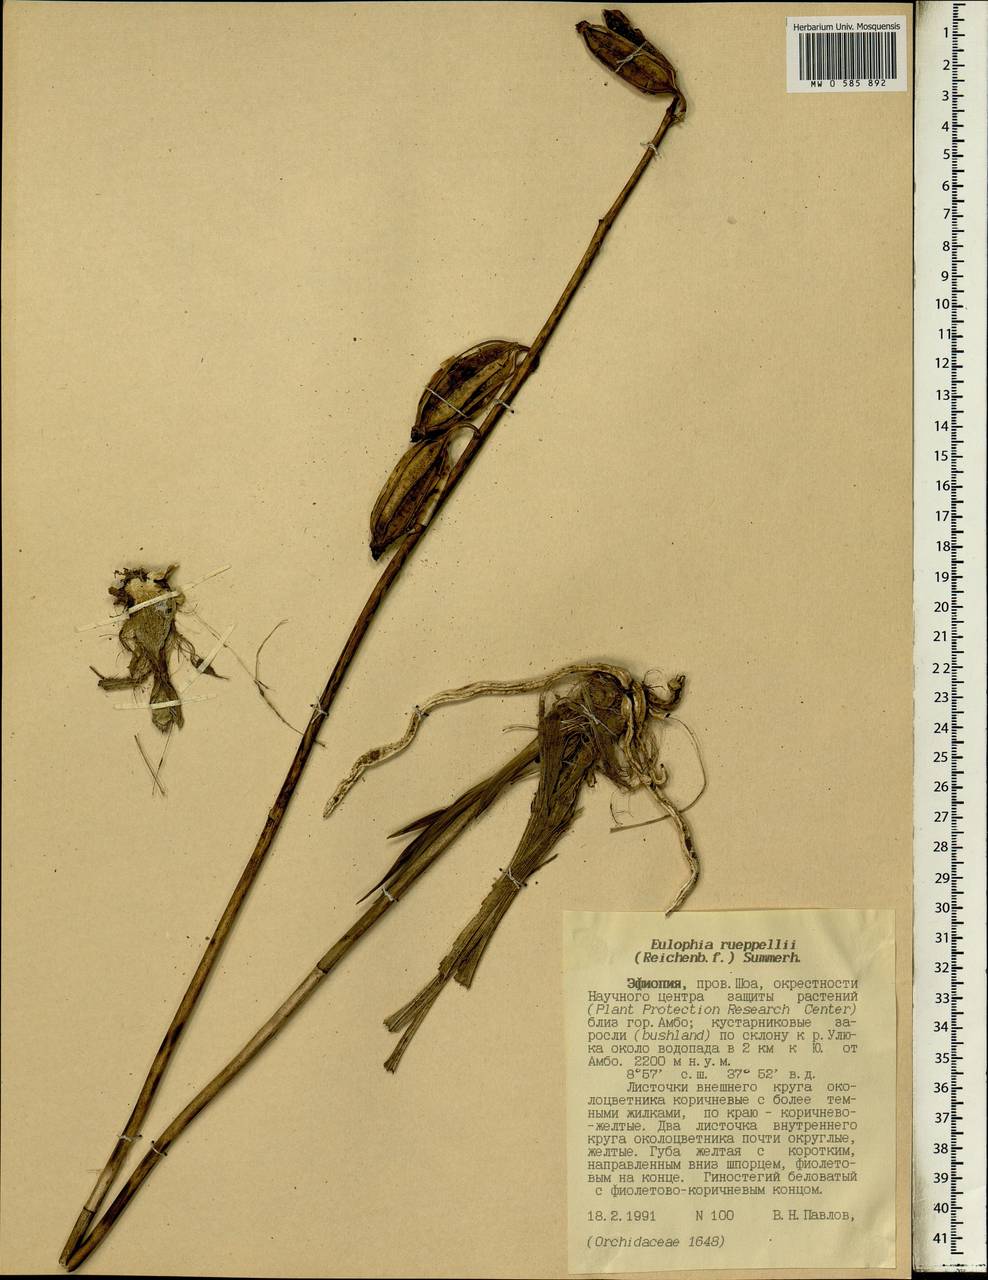 Eulophia streptopetala Lindl., Africa (AFR) (Ethiopia)